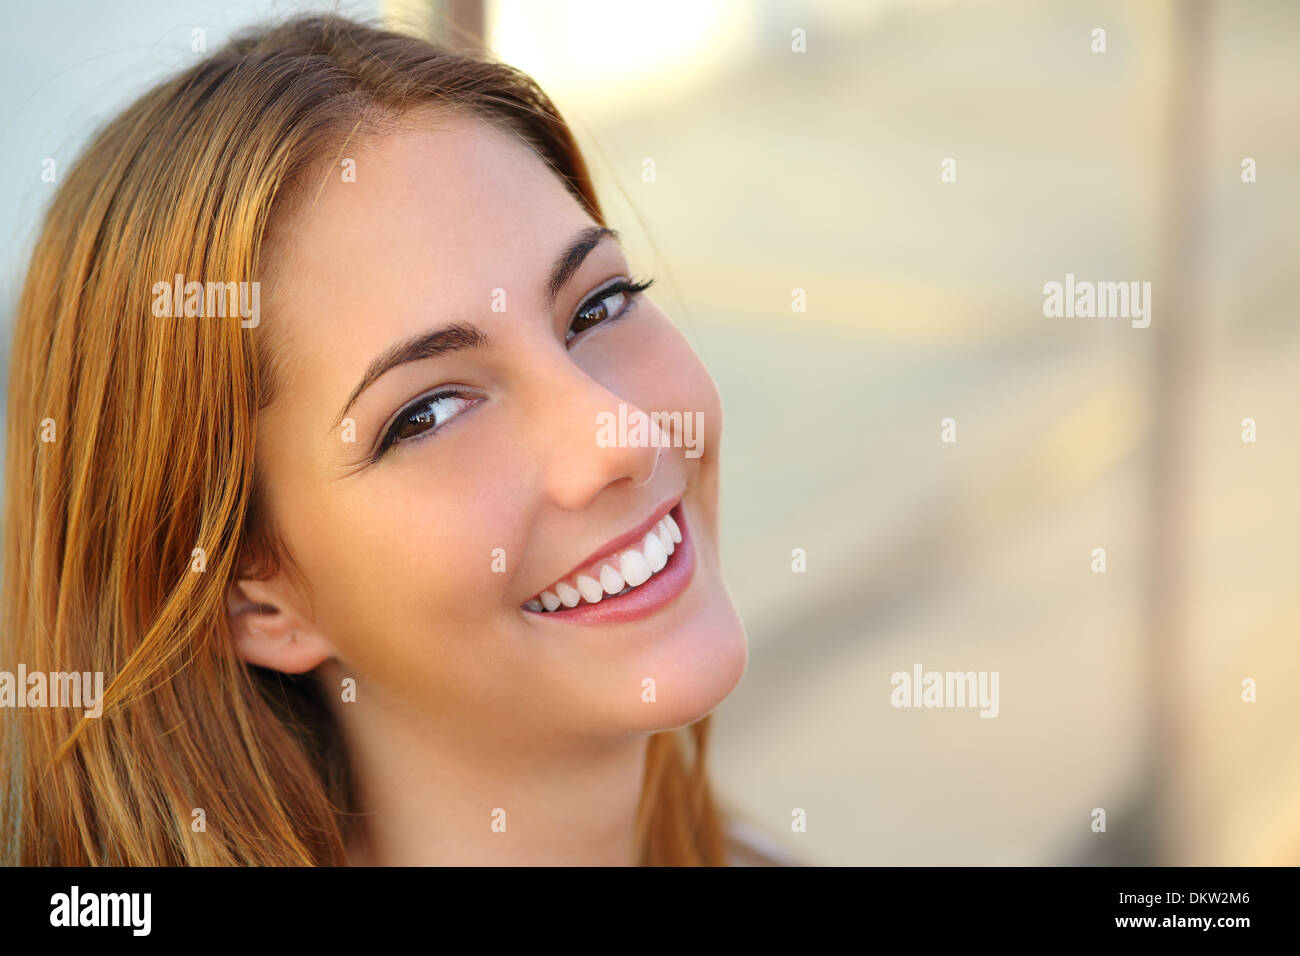 Bella donna con un bianco perfetto il sorriso e la pelle liscia con un background non focalizzato Foto Stock